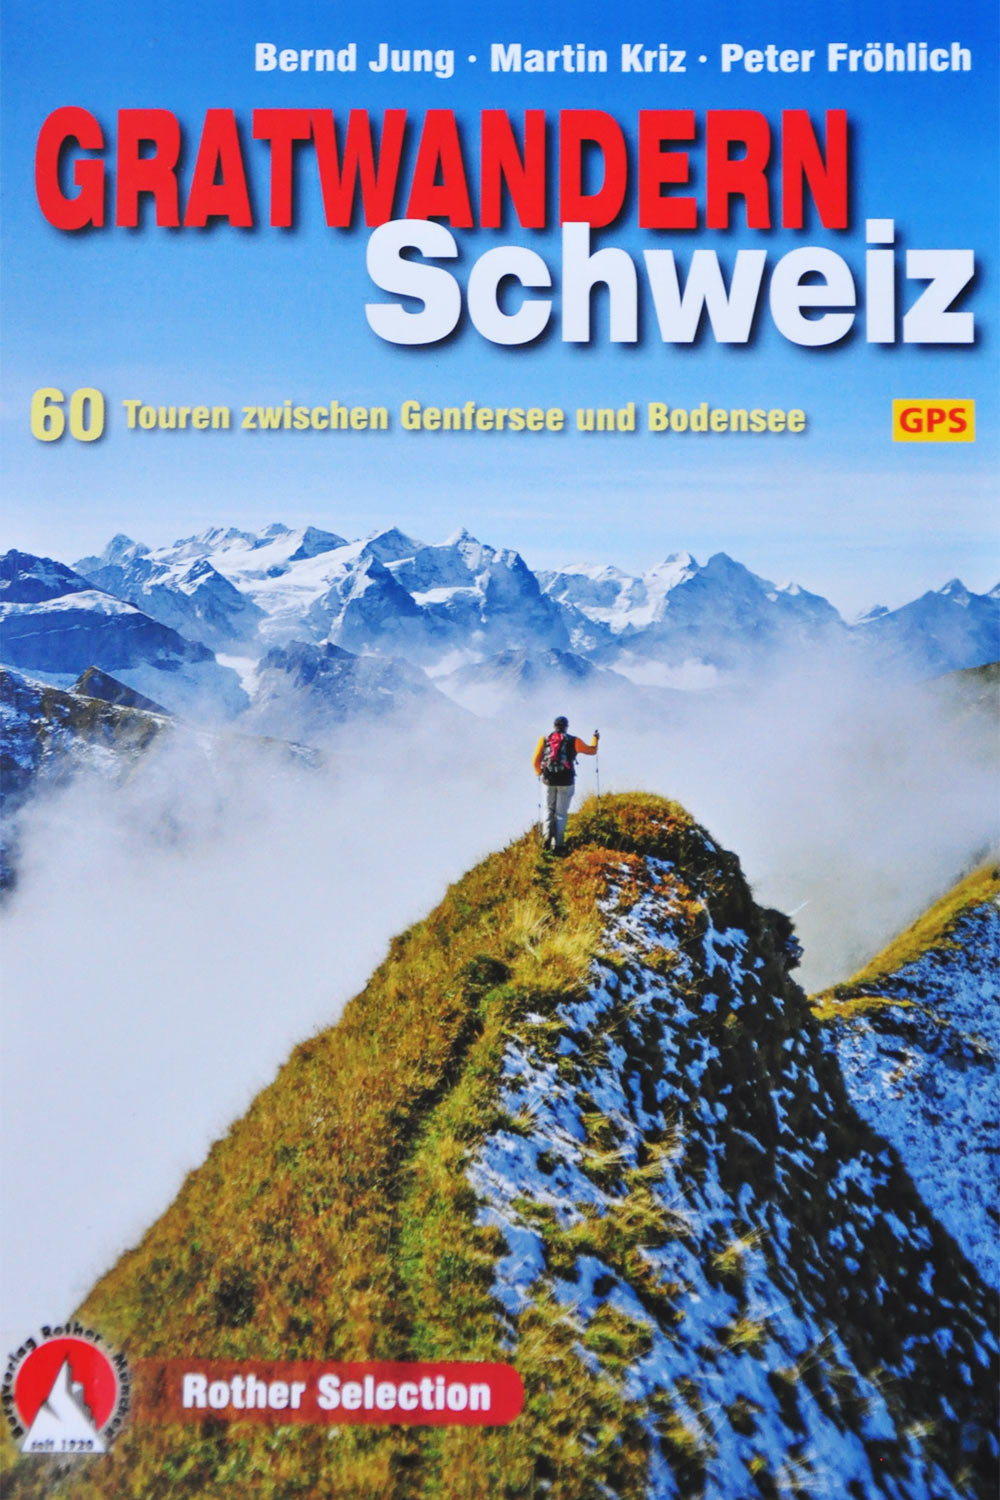 Rother Selection: Gratwandern Schweiz (Bernd Jung, Martin Kriz, Peter Fröhlich)